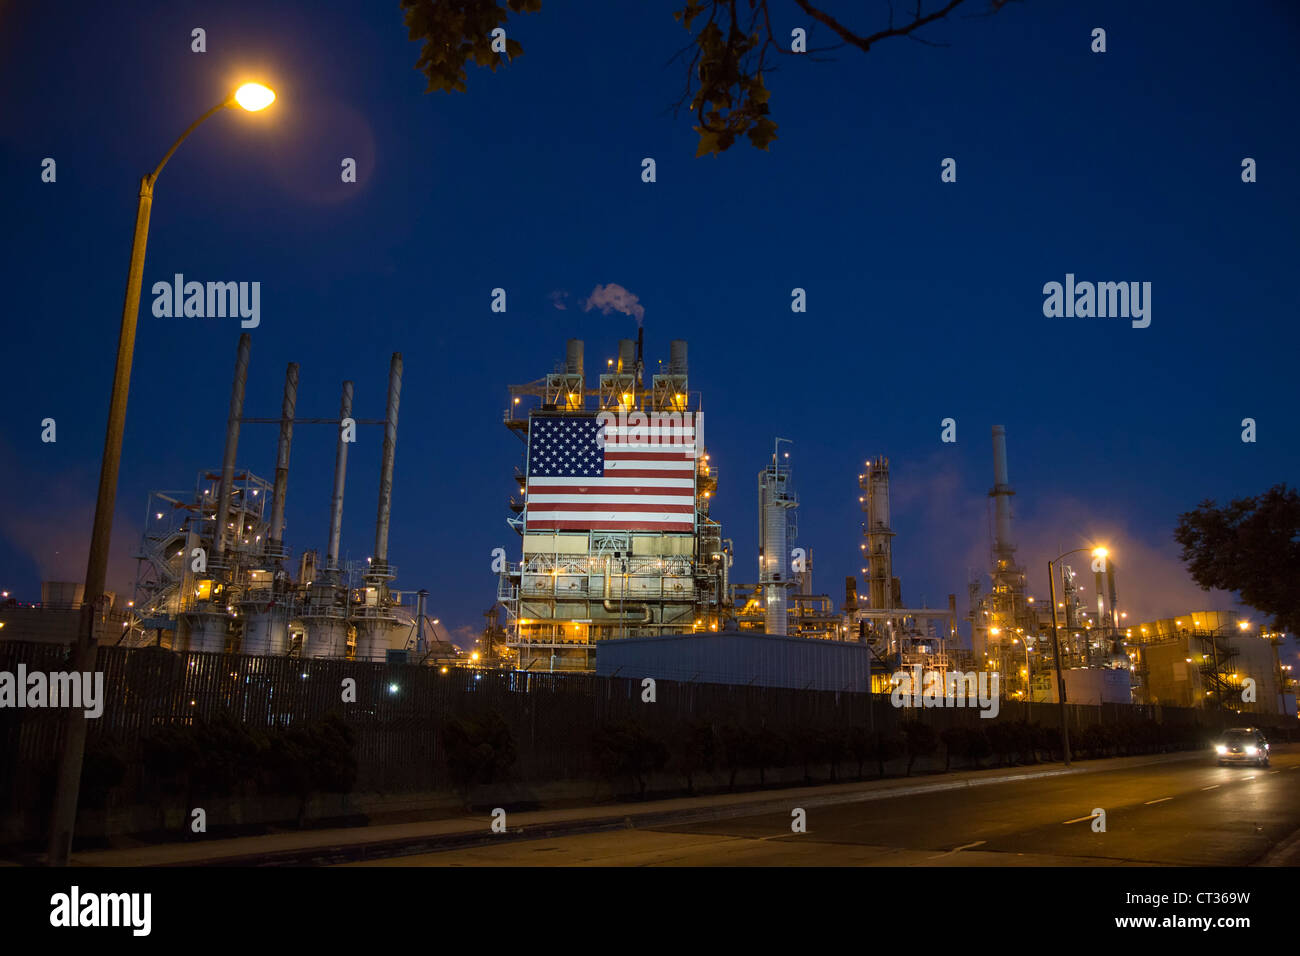 Wilmington, en Californie - une raffinerie de pétrole, exploité par BP, affiche un énorme drapeau américain. Banque D'Images